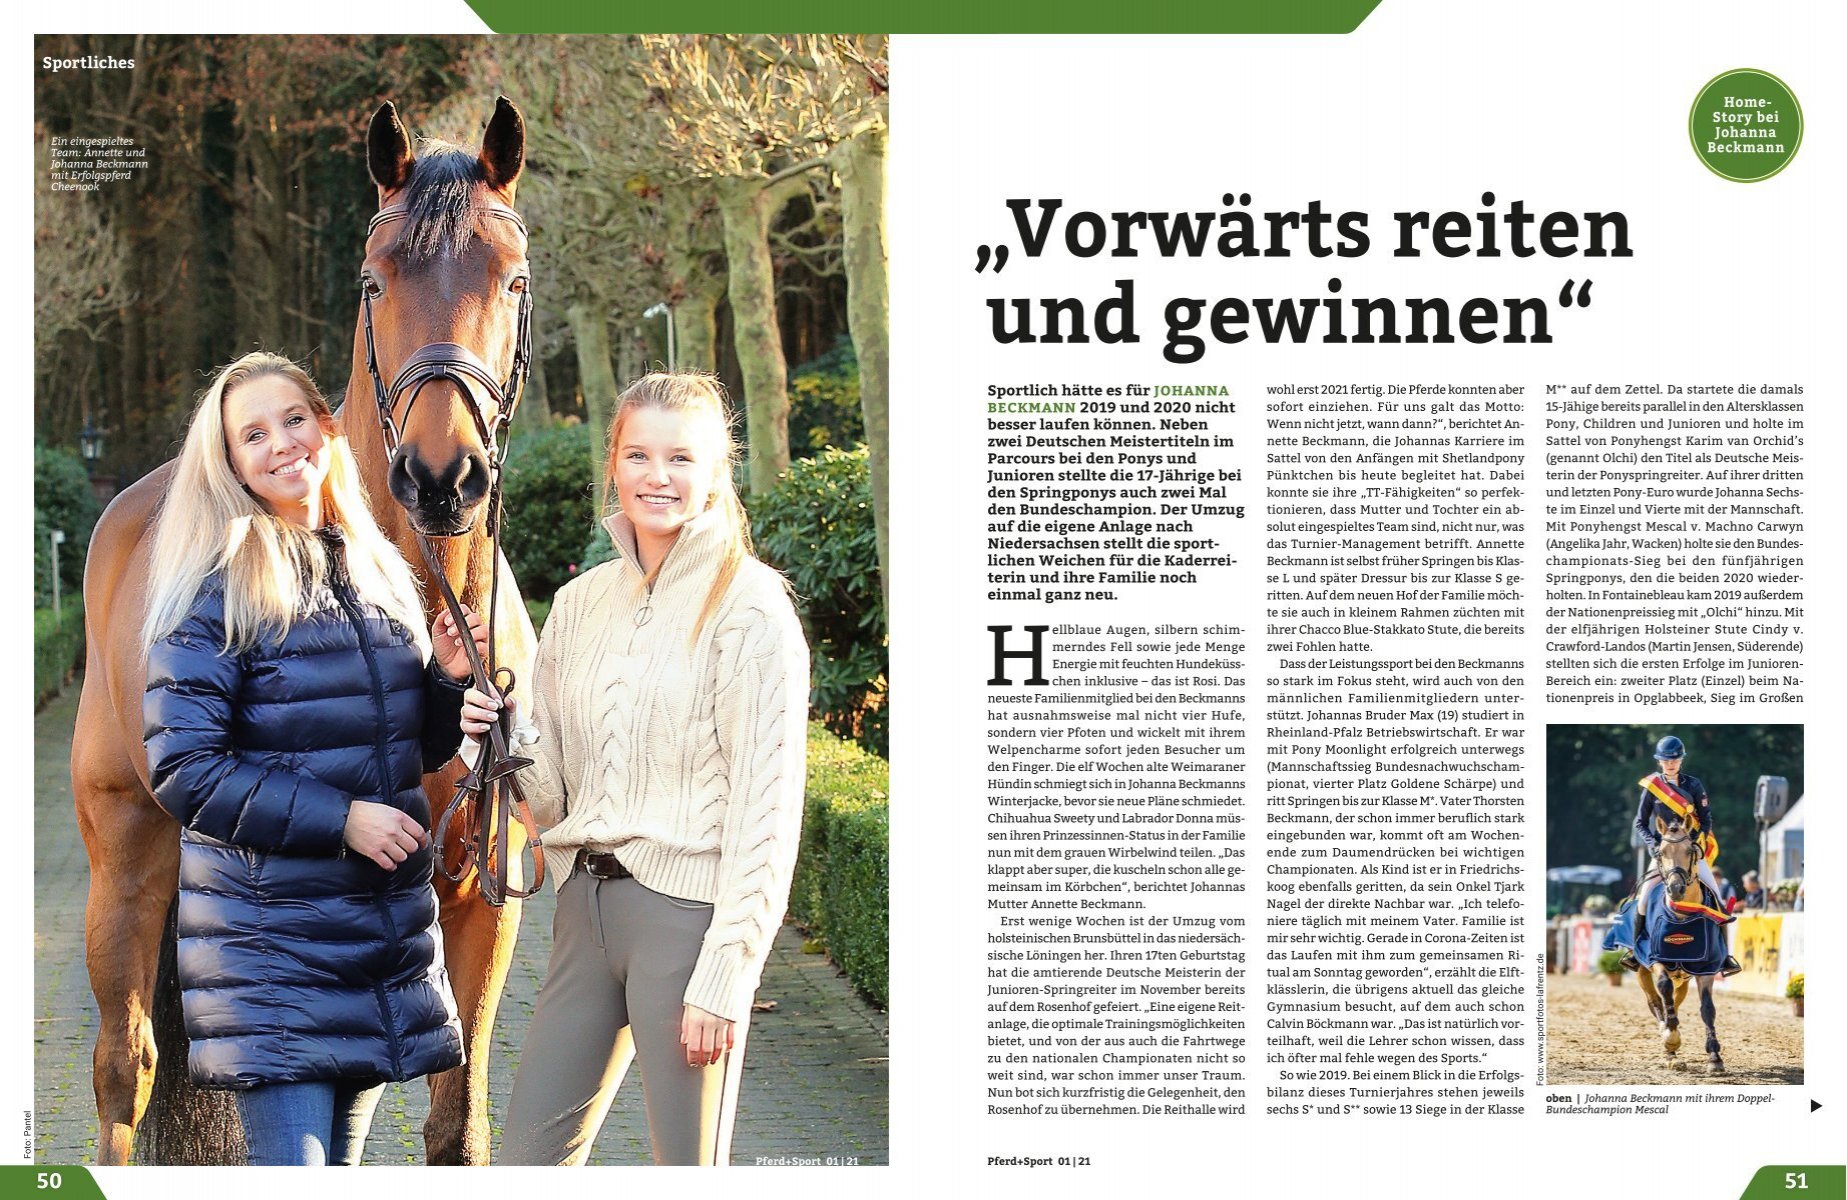 Ko Kostbar Ordinere Pferd+Sport 01/21 - Home-Story bei Johanna Beckmann: „Vorwärts reiten und  gewinnen“